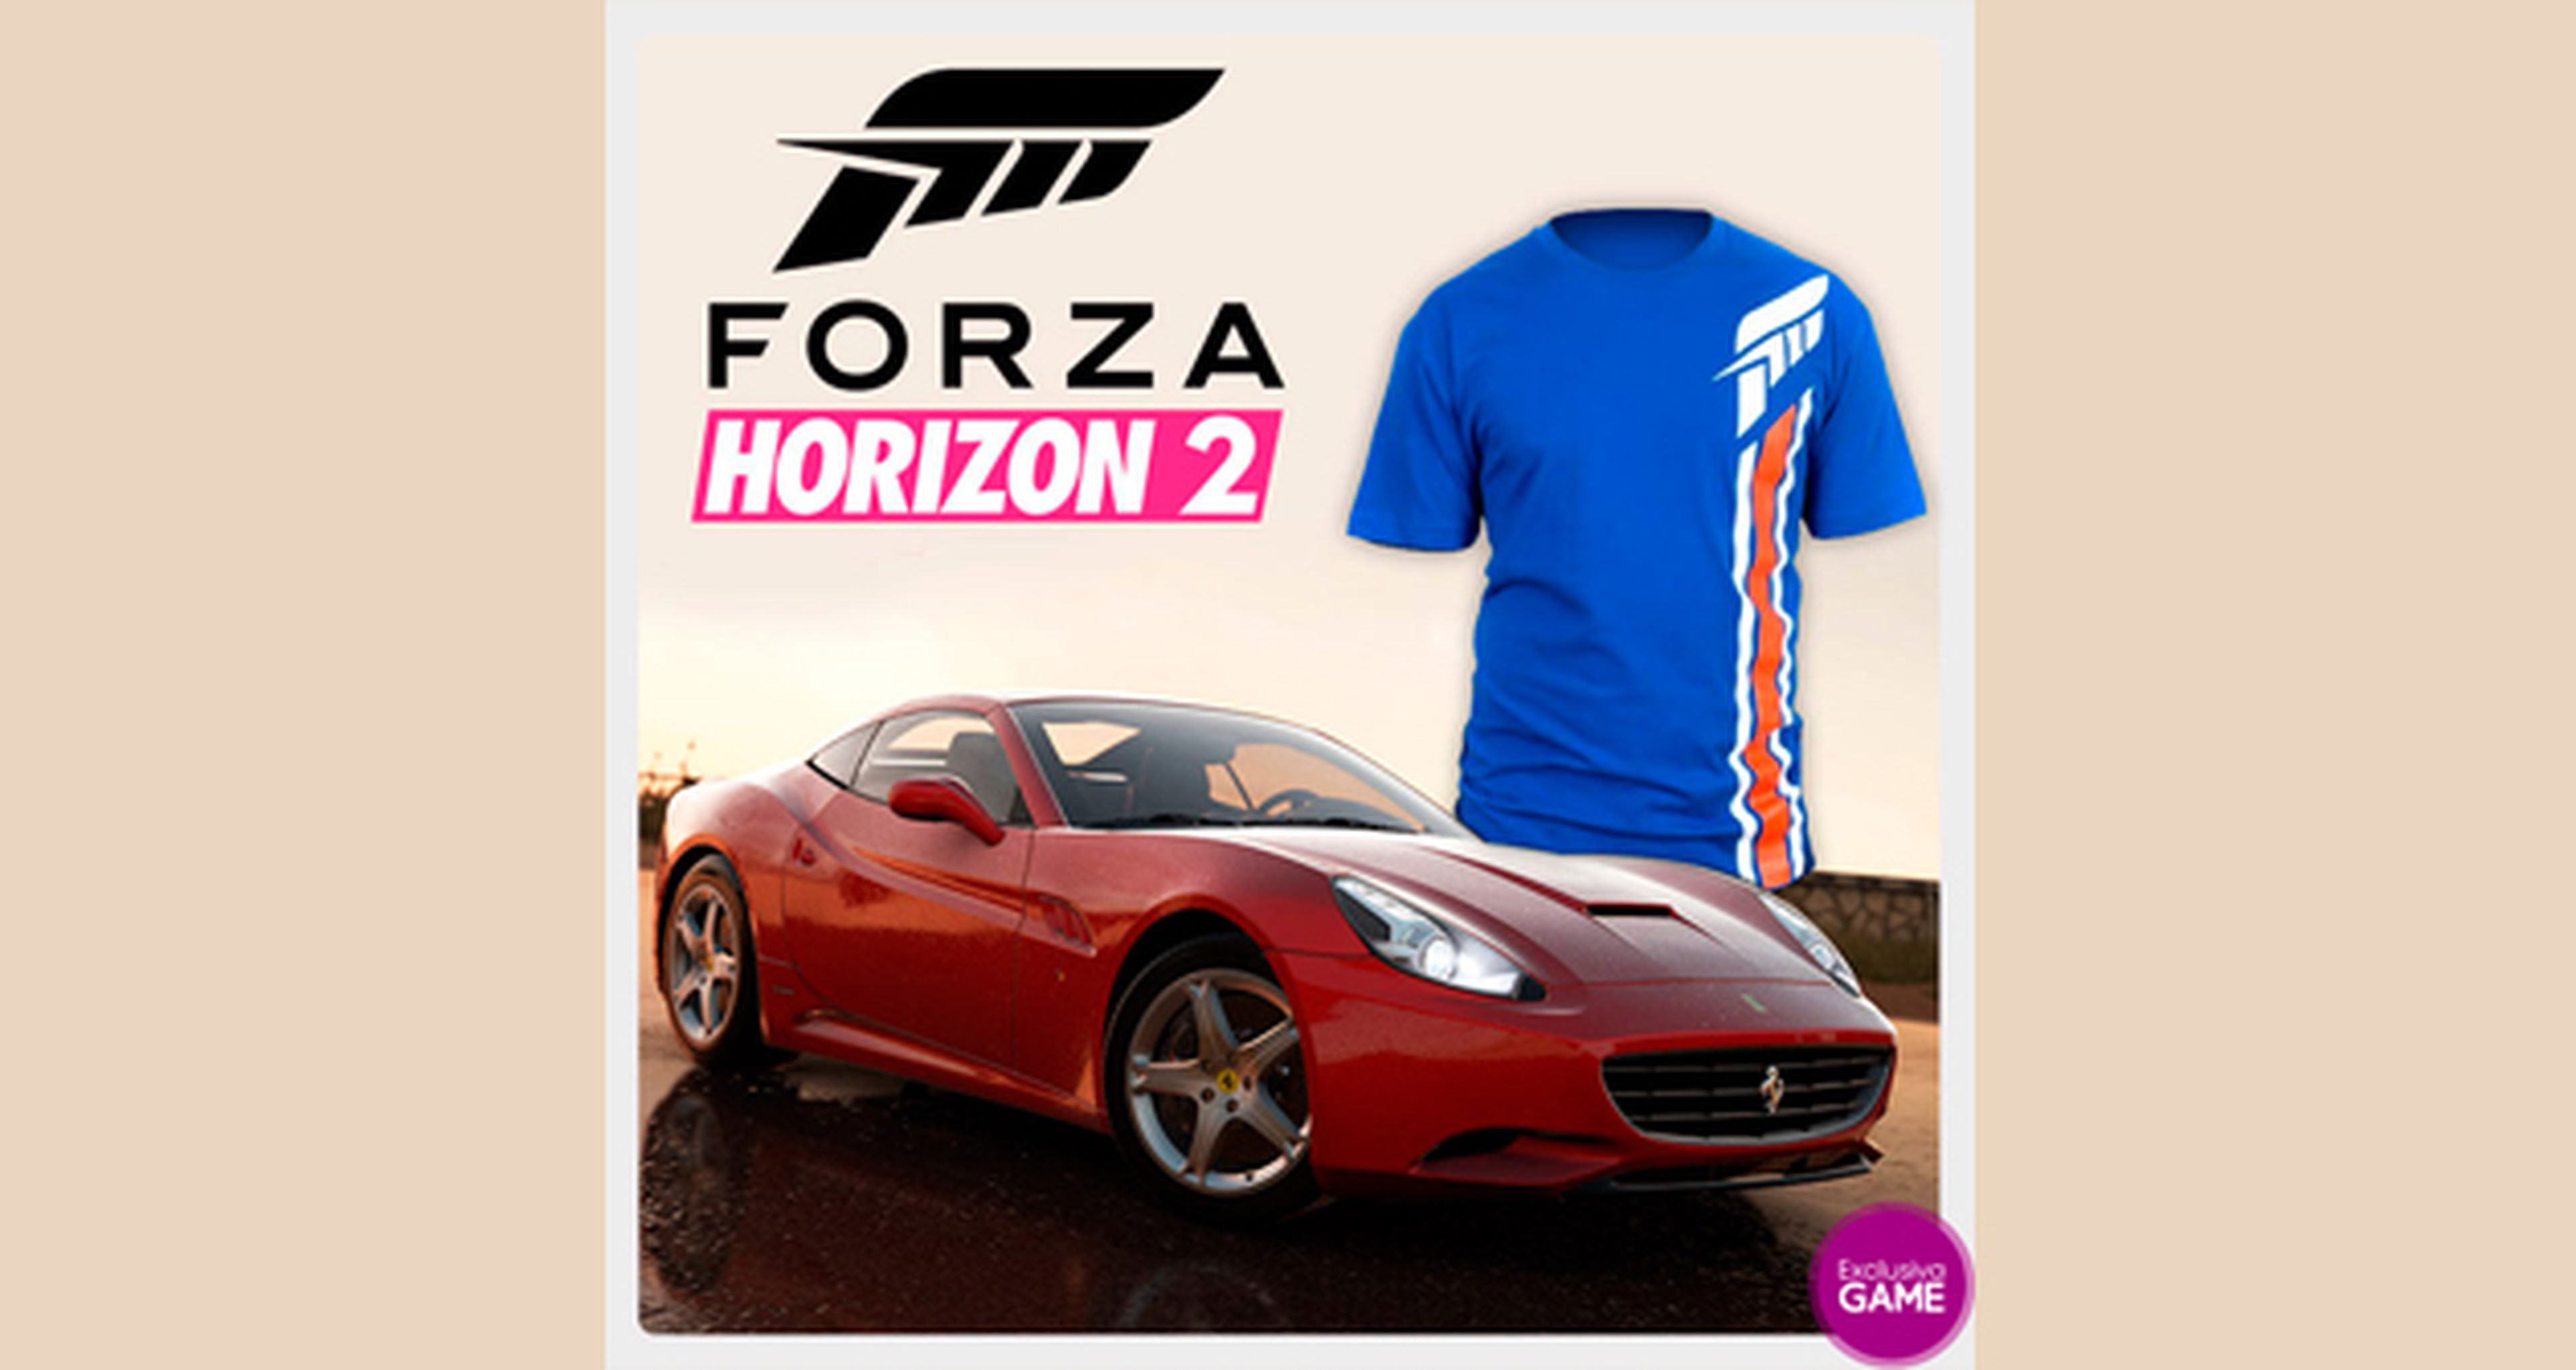 Regalos por reservar Forza Horizon 2 en GAME